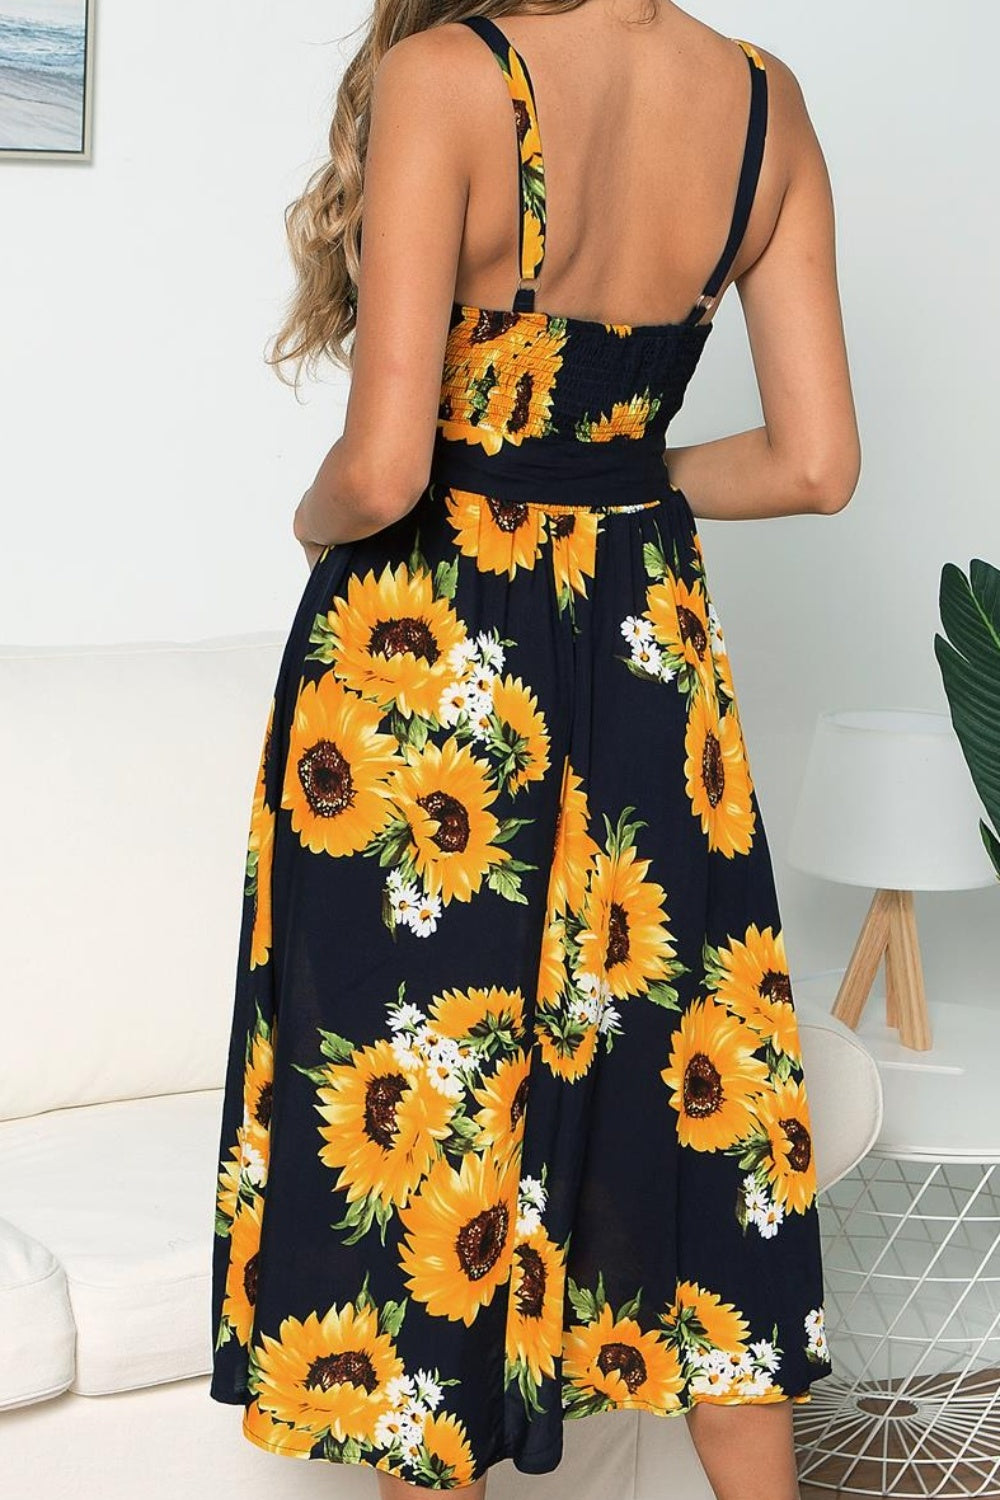 Sunflower Print Sleeveless Cami Dress for Women Over 50 - Perfect Summer Beach Wedding Guest Party Attire